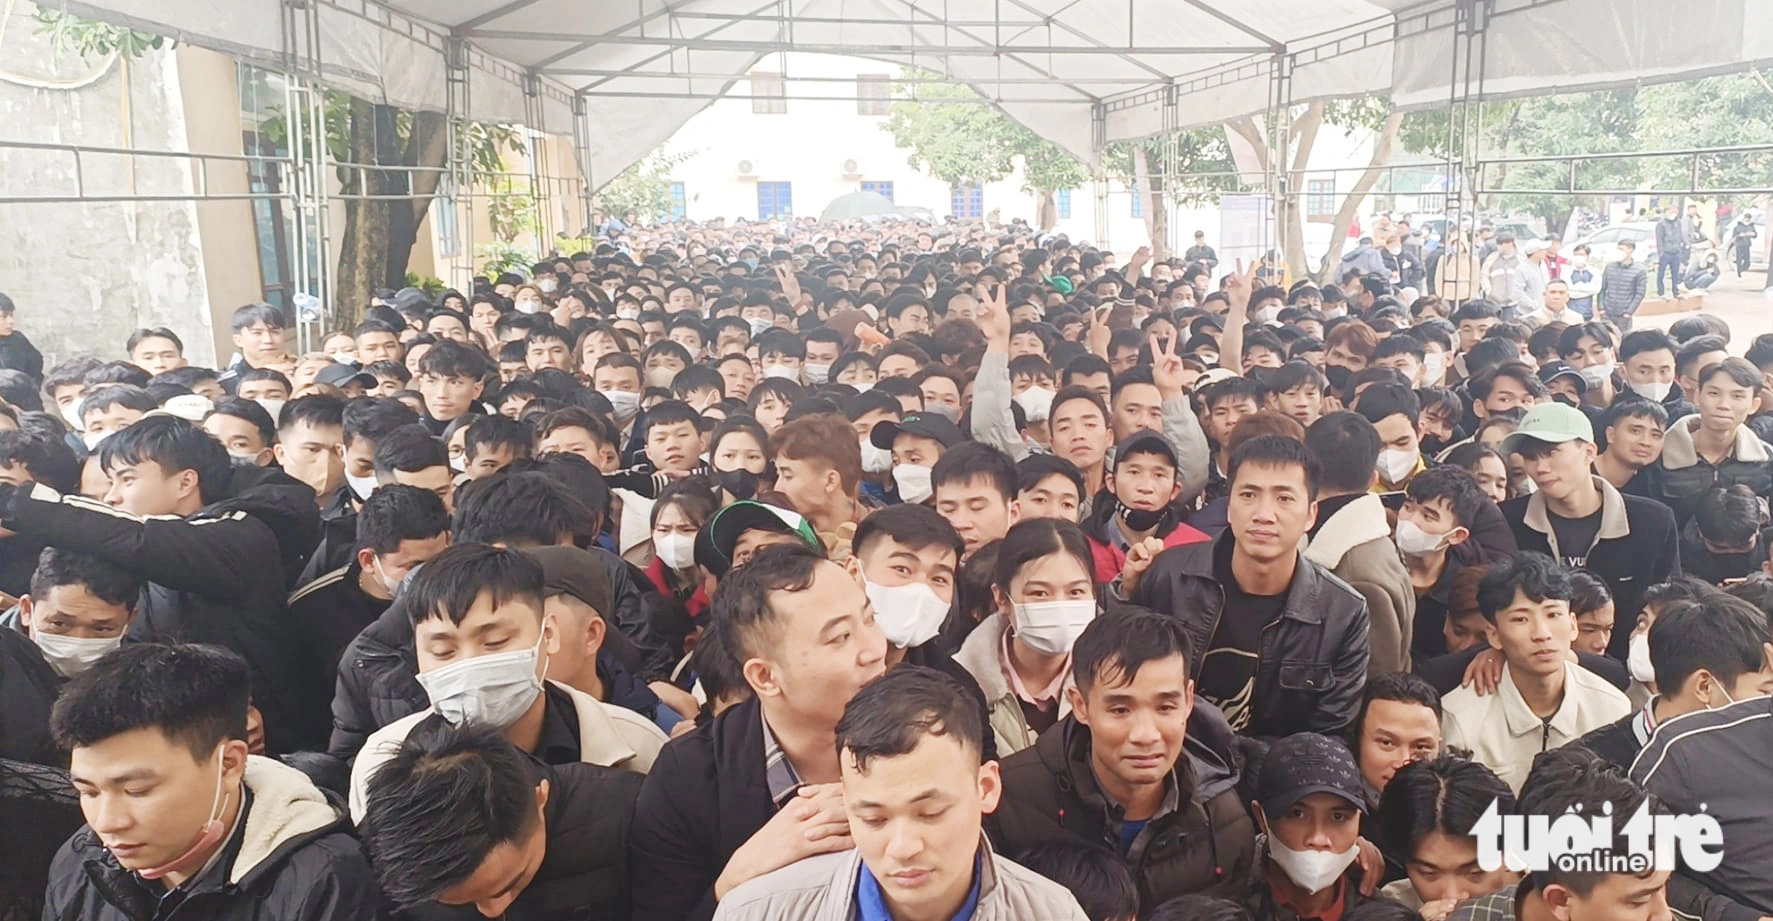 Hàng ngàn người đội mưa rét đăng ký thi đi Hàn Quốc lao động